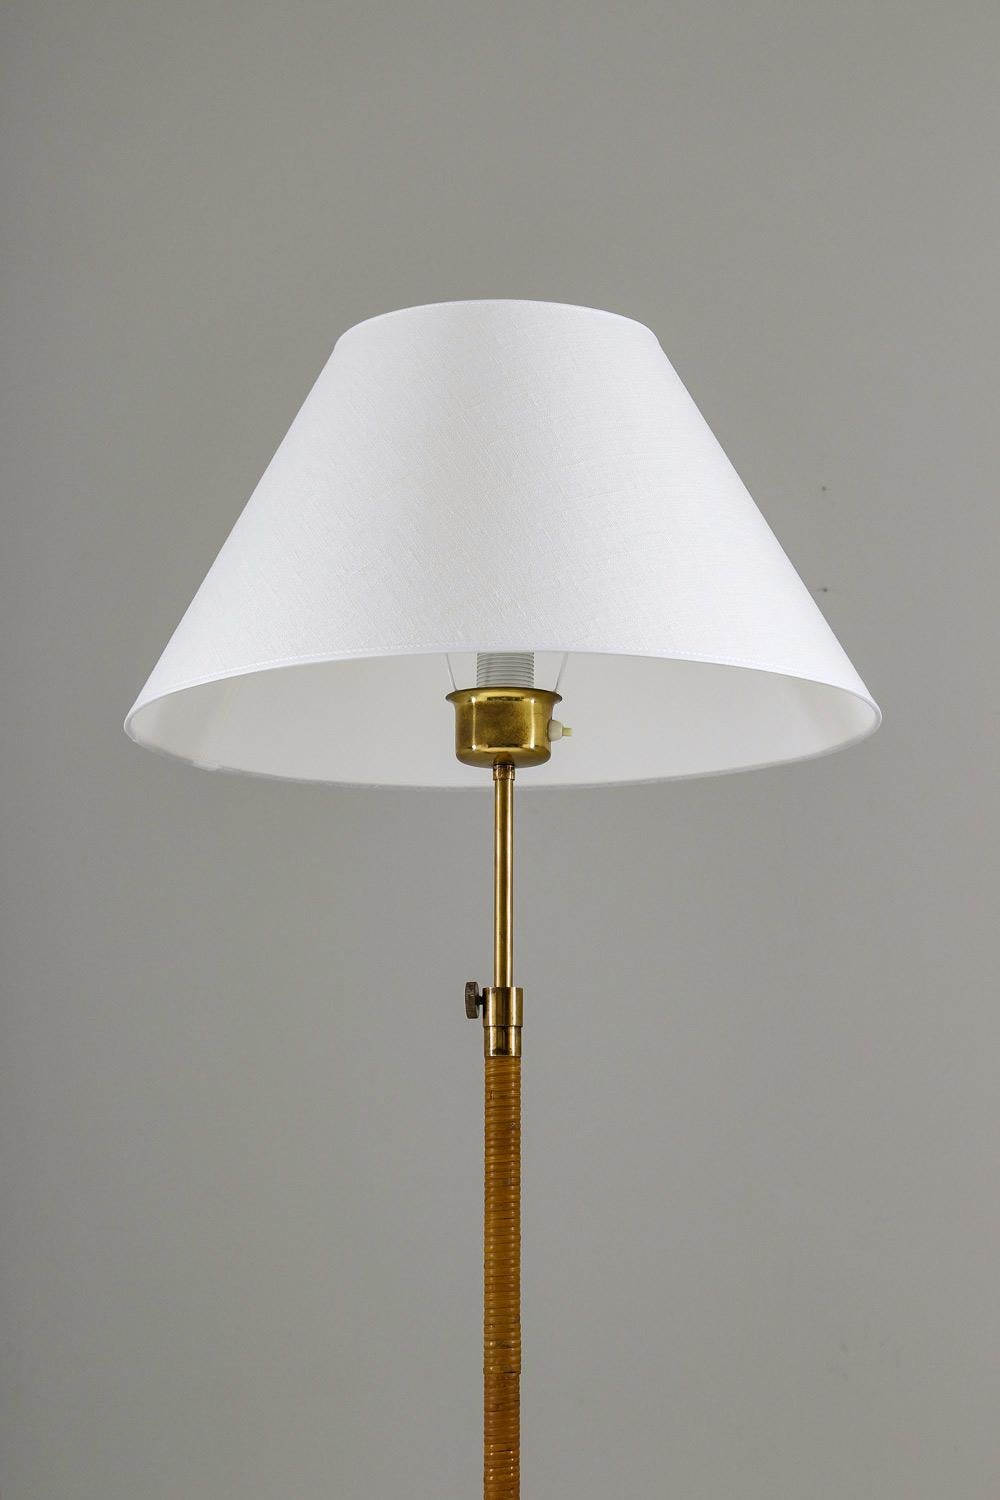 Rare lampadaire, probablement fabriqué par ASEA, Suède, années 1940.
Lampe très élégante d'un beau design. Le pied supportant la lampe est une pièce d'art en soi et possède une patine parfaite. Le mât est tressé en rotin, avec des détails en